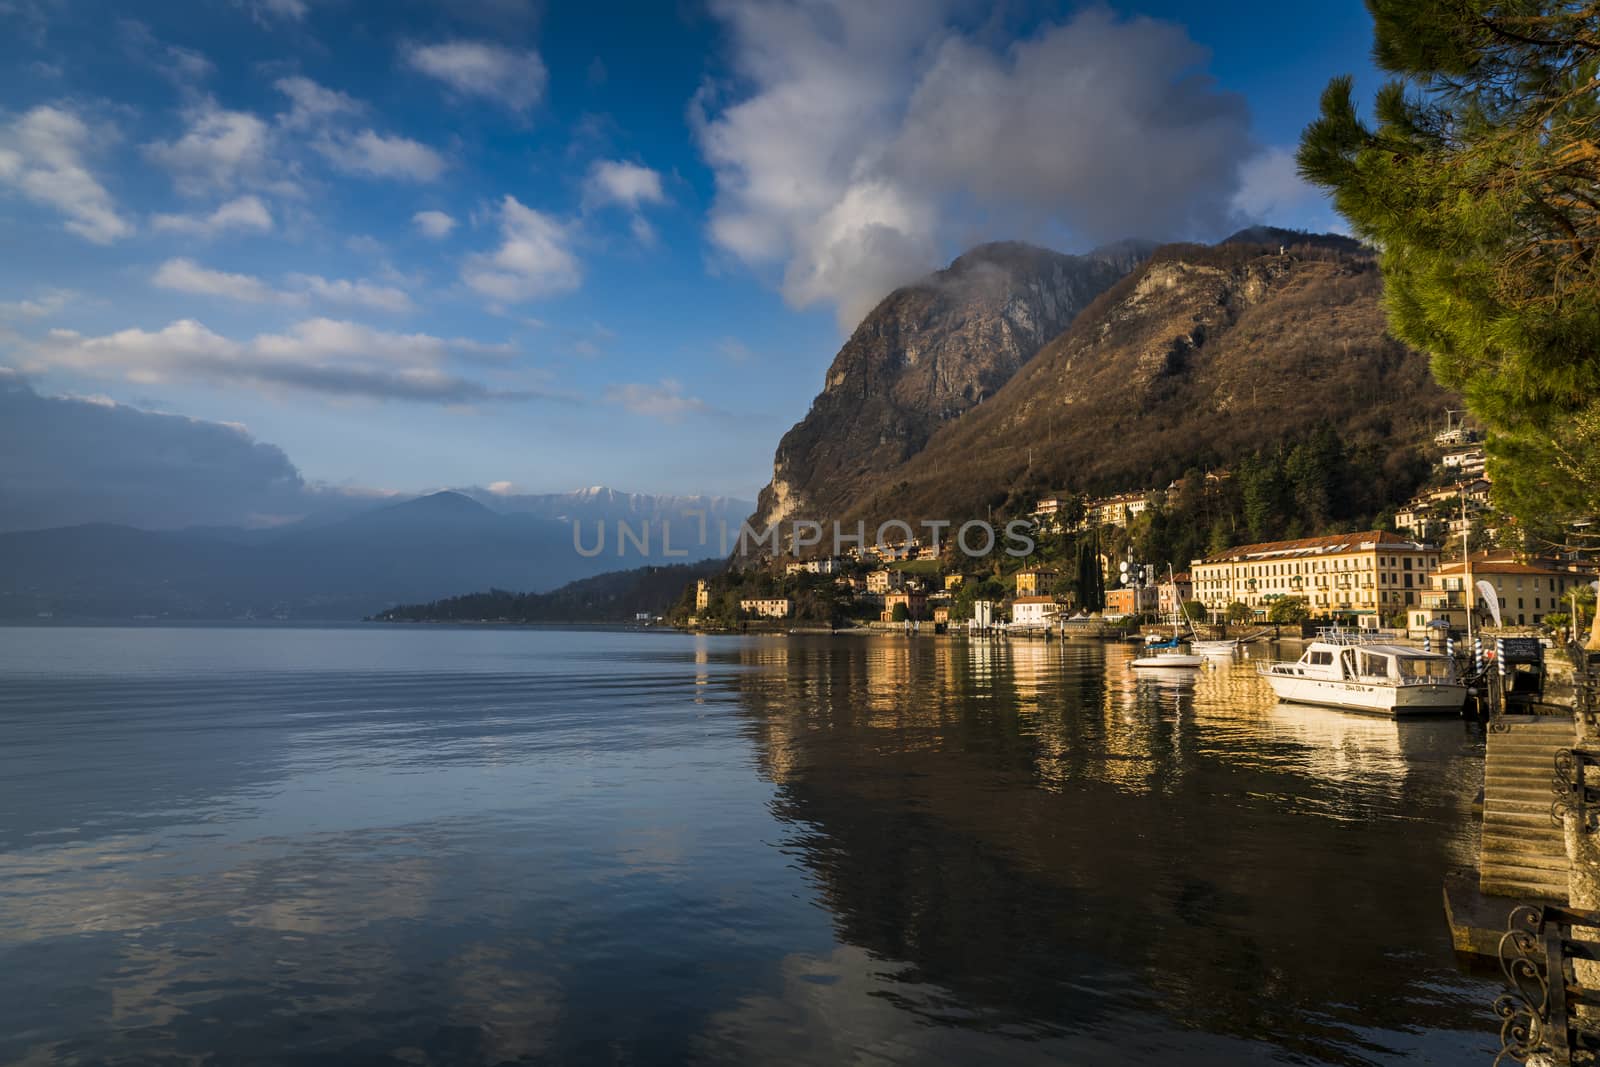 Beautiful morning at Mennagio, Italy, Lake Como.